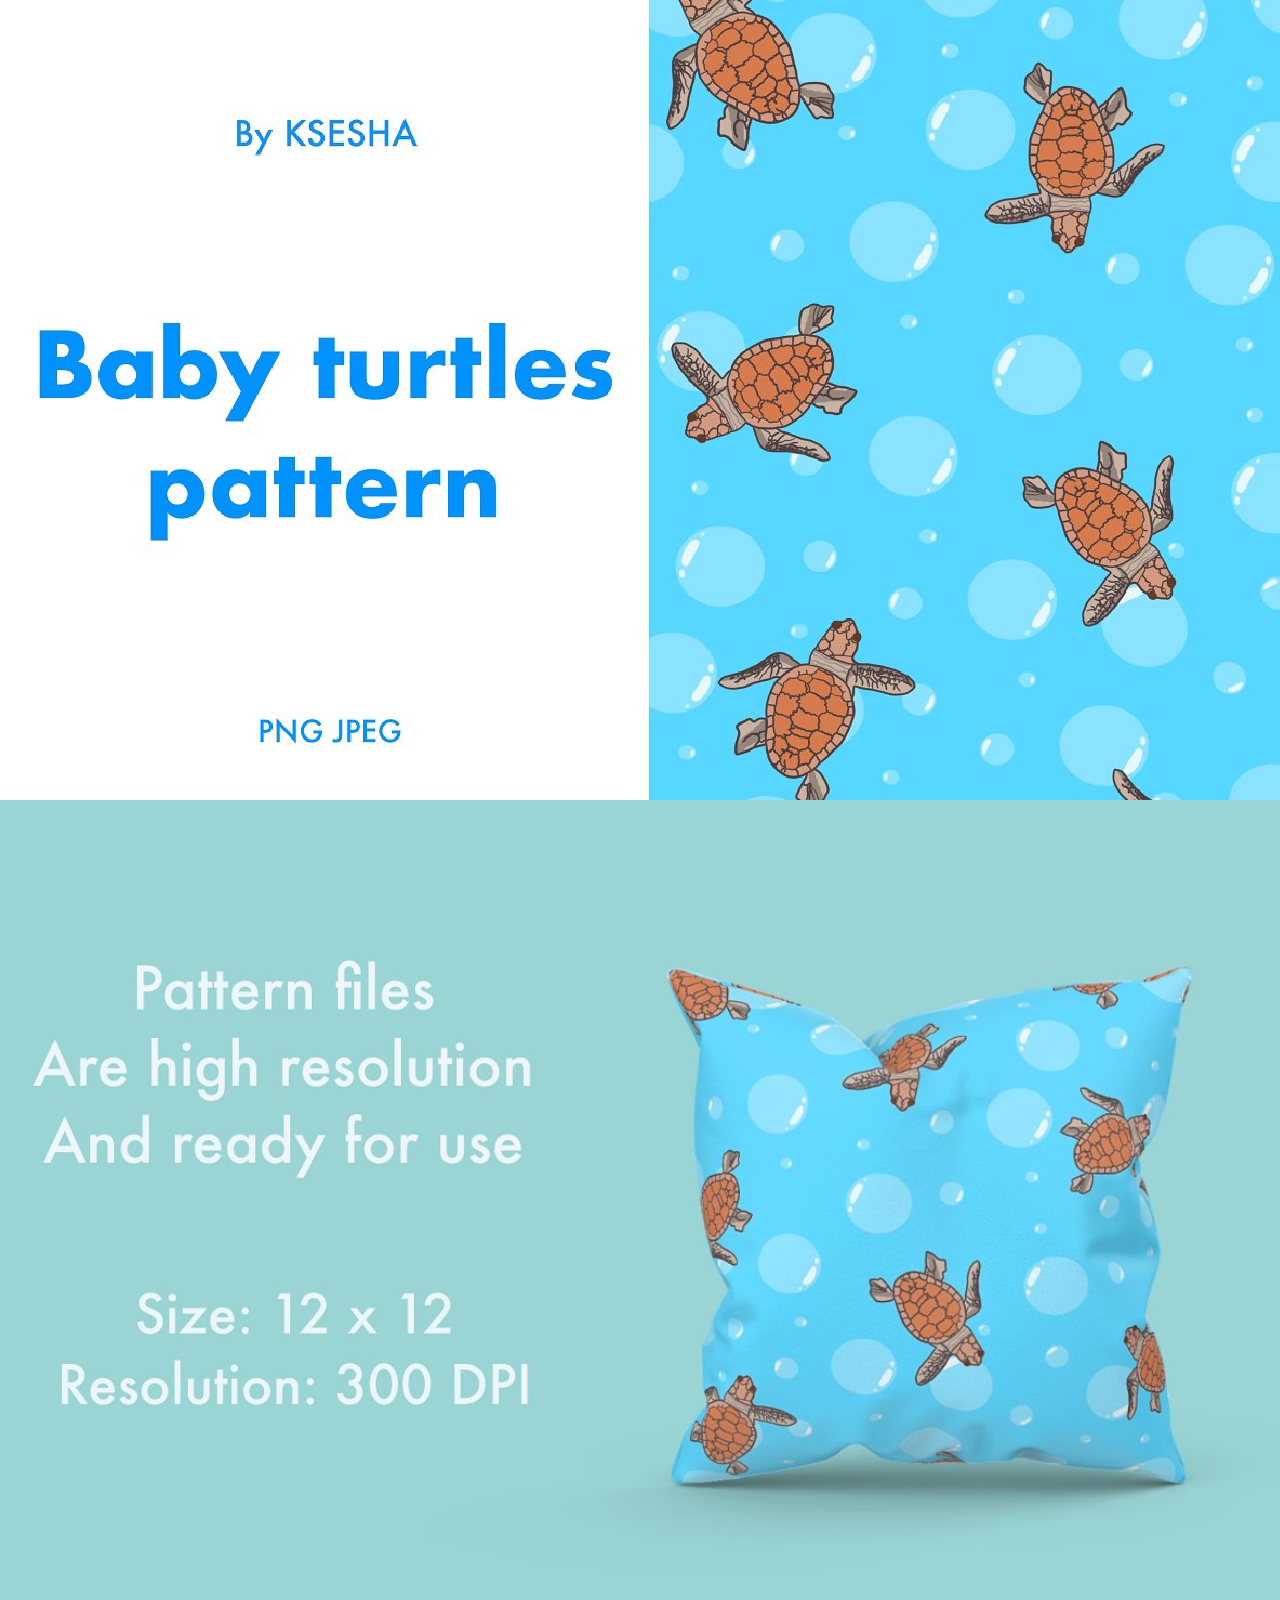 Baby turtles pattern pinterest image.